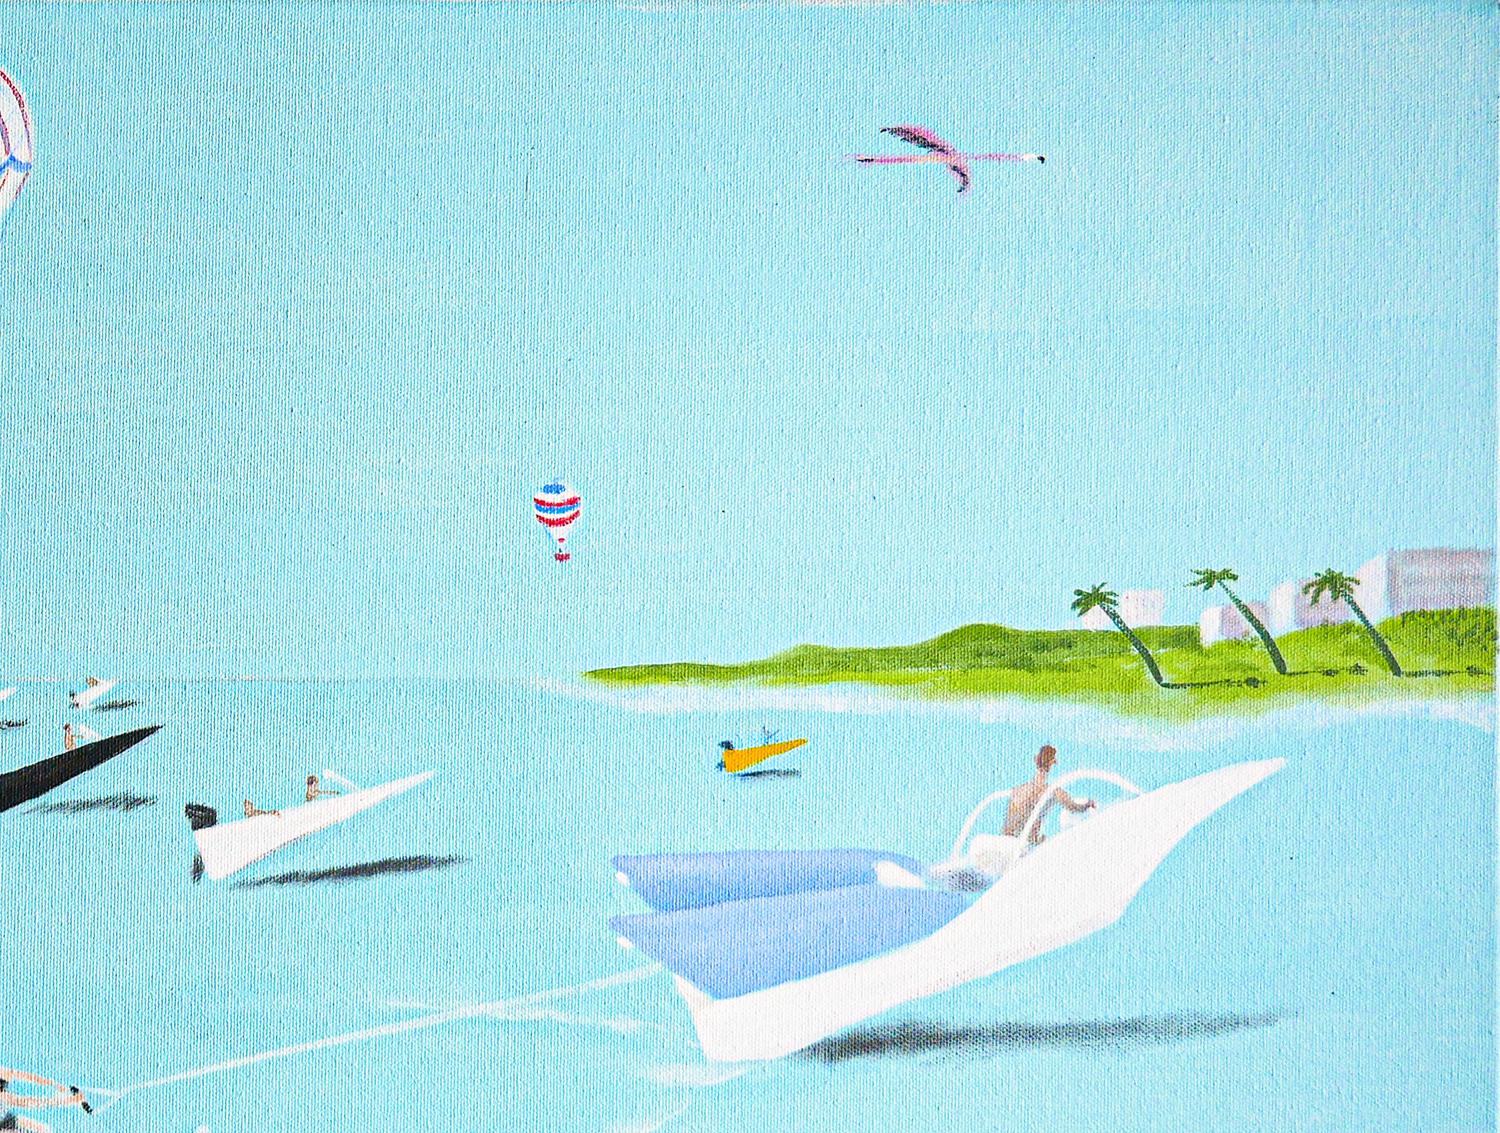 Peinture contemporaine abstraite bleu ciel, rose et vert clair de l'artiste Scott Woodard de Houston, TX. La peinture représente une scène de plage amusante avec des éléments surréalistes tels que des bateaux et des jetskis qui ressemblent à des